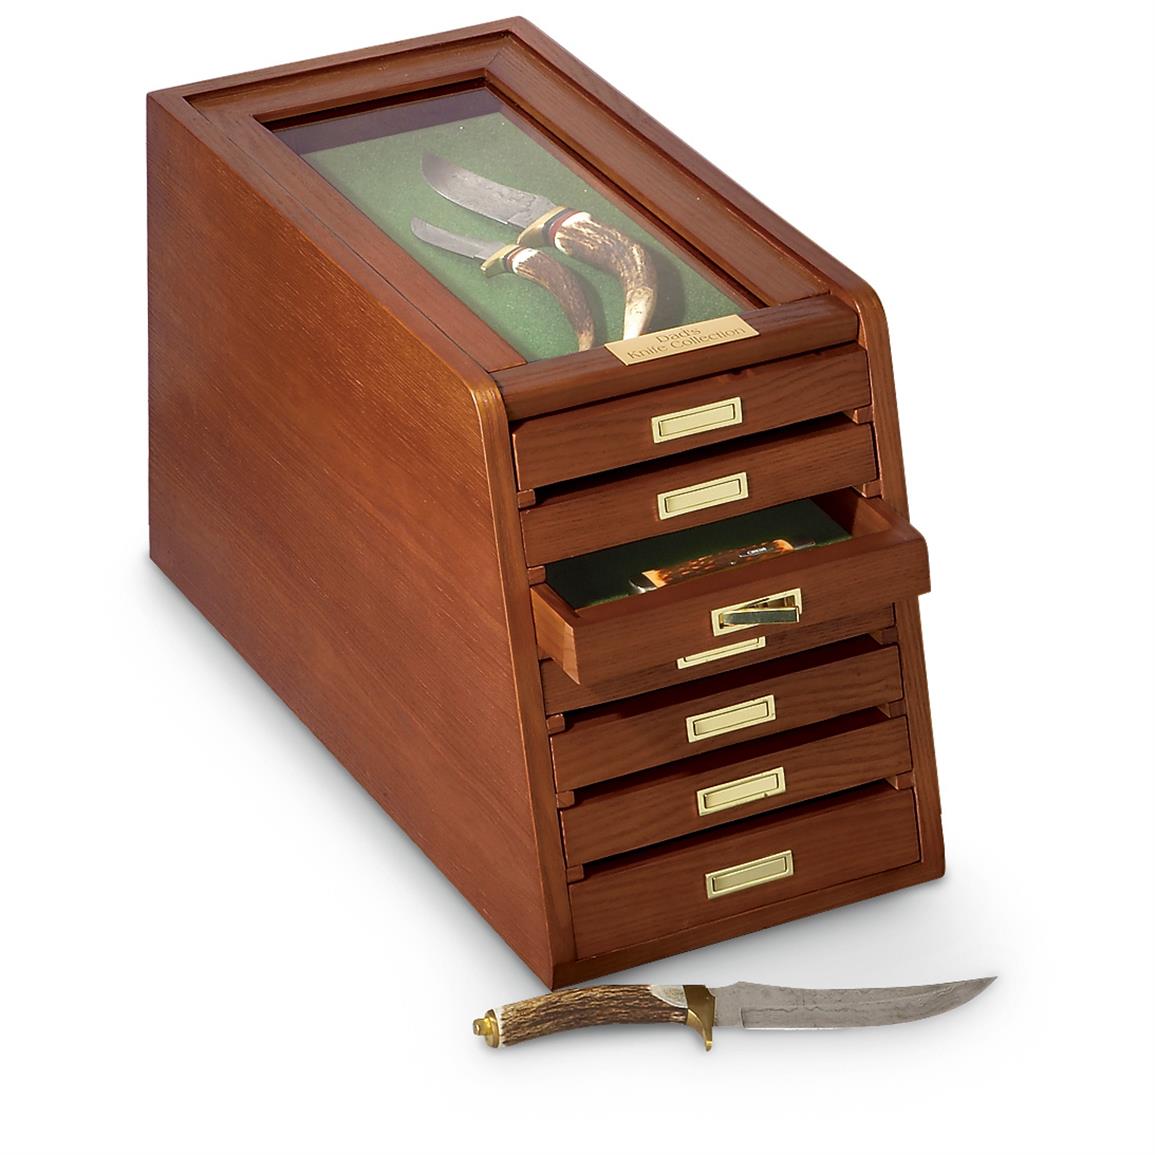 CASTLECREEK Collector's Cabinet Display Case - 648958 